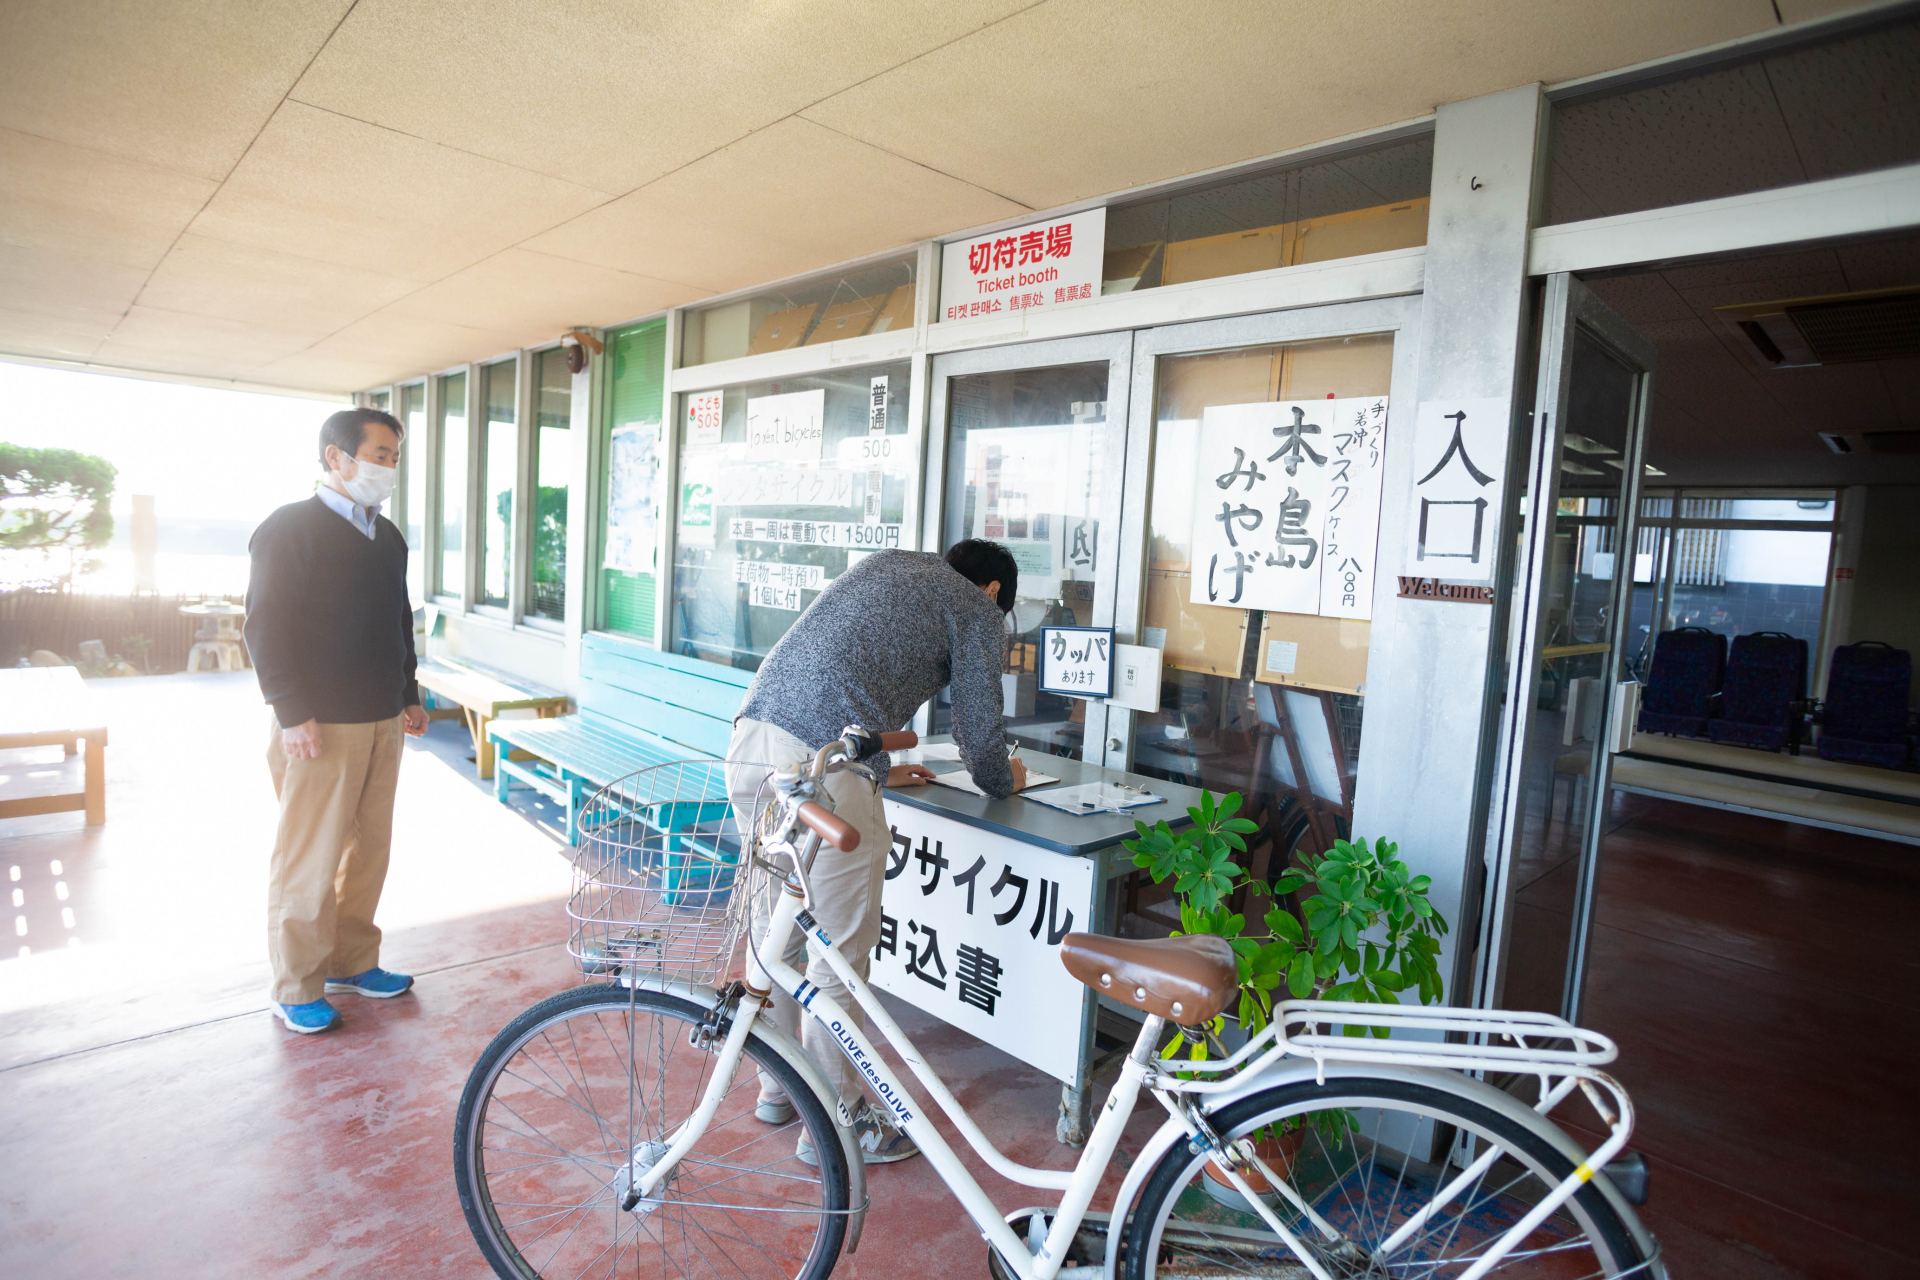 本岛自行车畅游之旅 骑着自行车环绕充满历史与自然的本岛一周 好运日本行